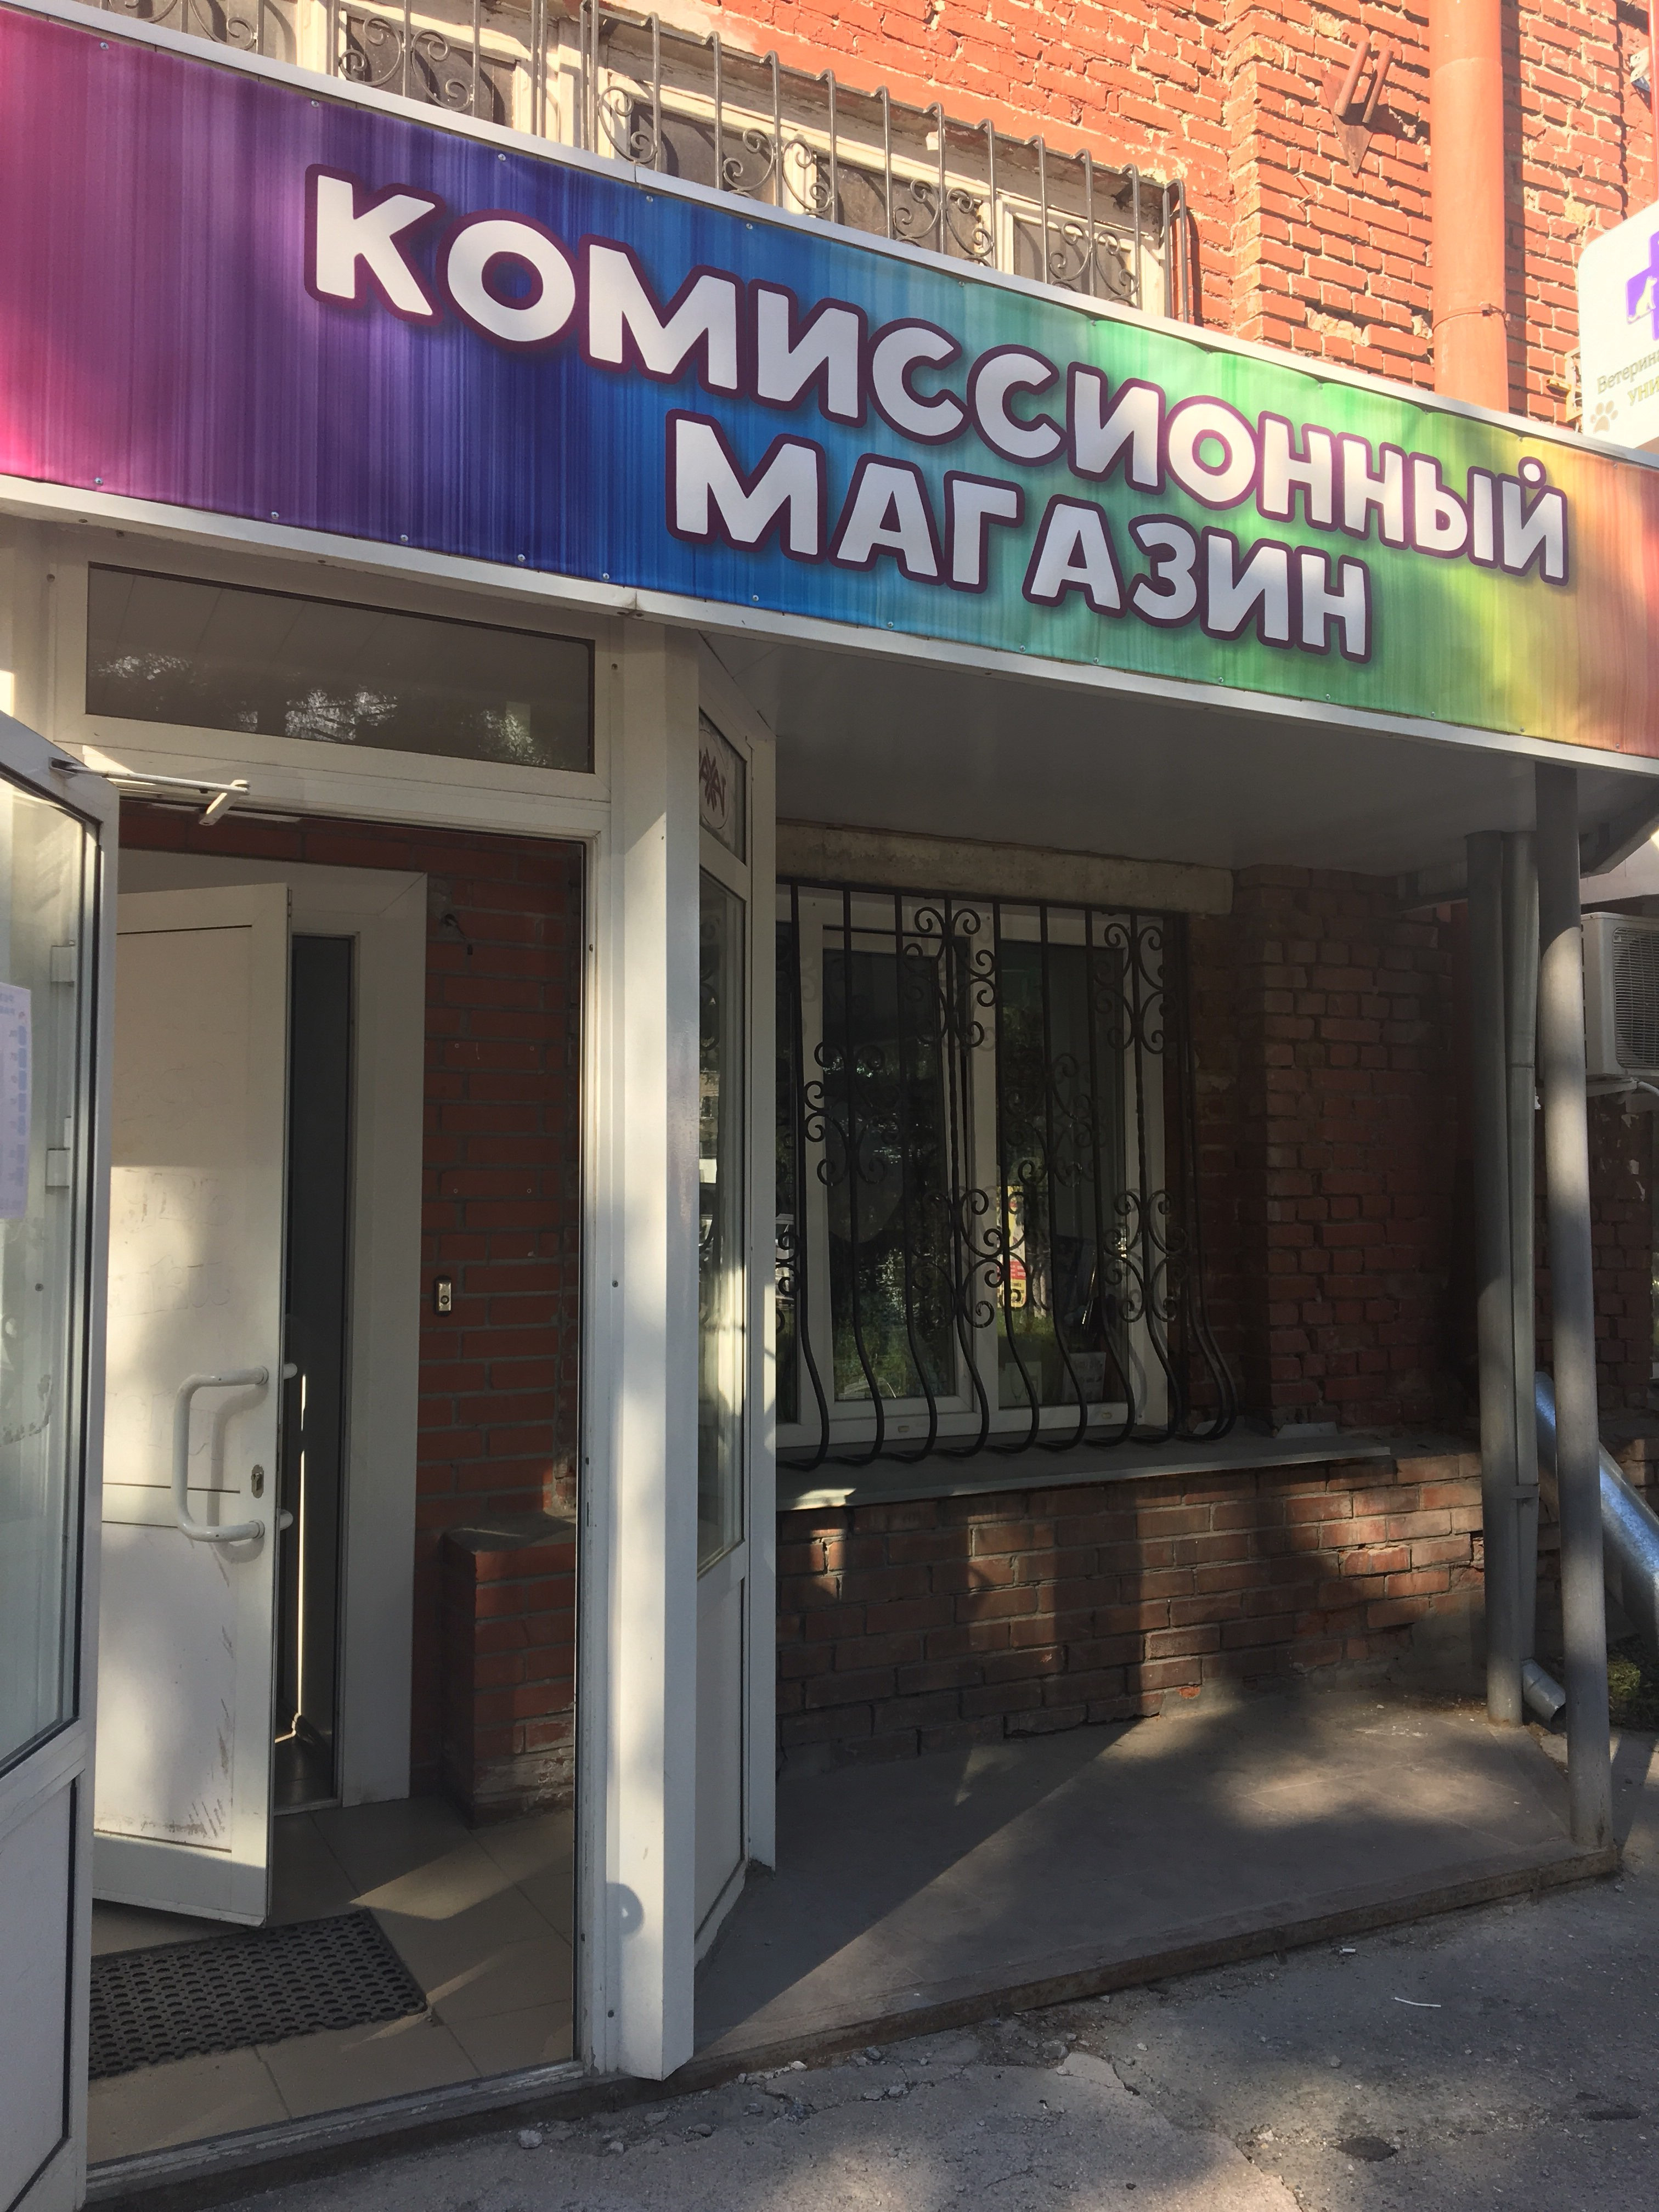 Первый комиссионный. Комиссионные магазины в Новосибирске. Комиссионный магазин в Новосибирске. Первый комиссионный магазин Новосибирск Гурьевская. Комиссионный магазин в Новосибирске одежды.